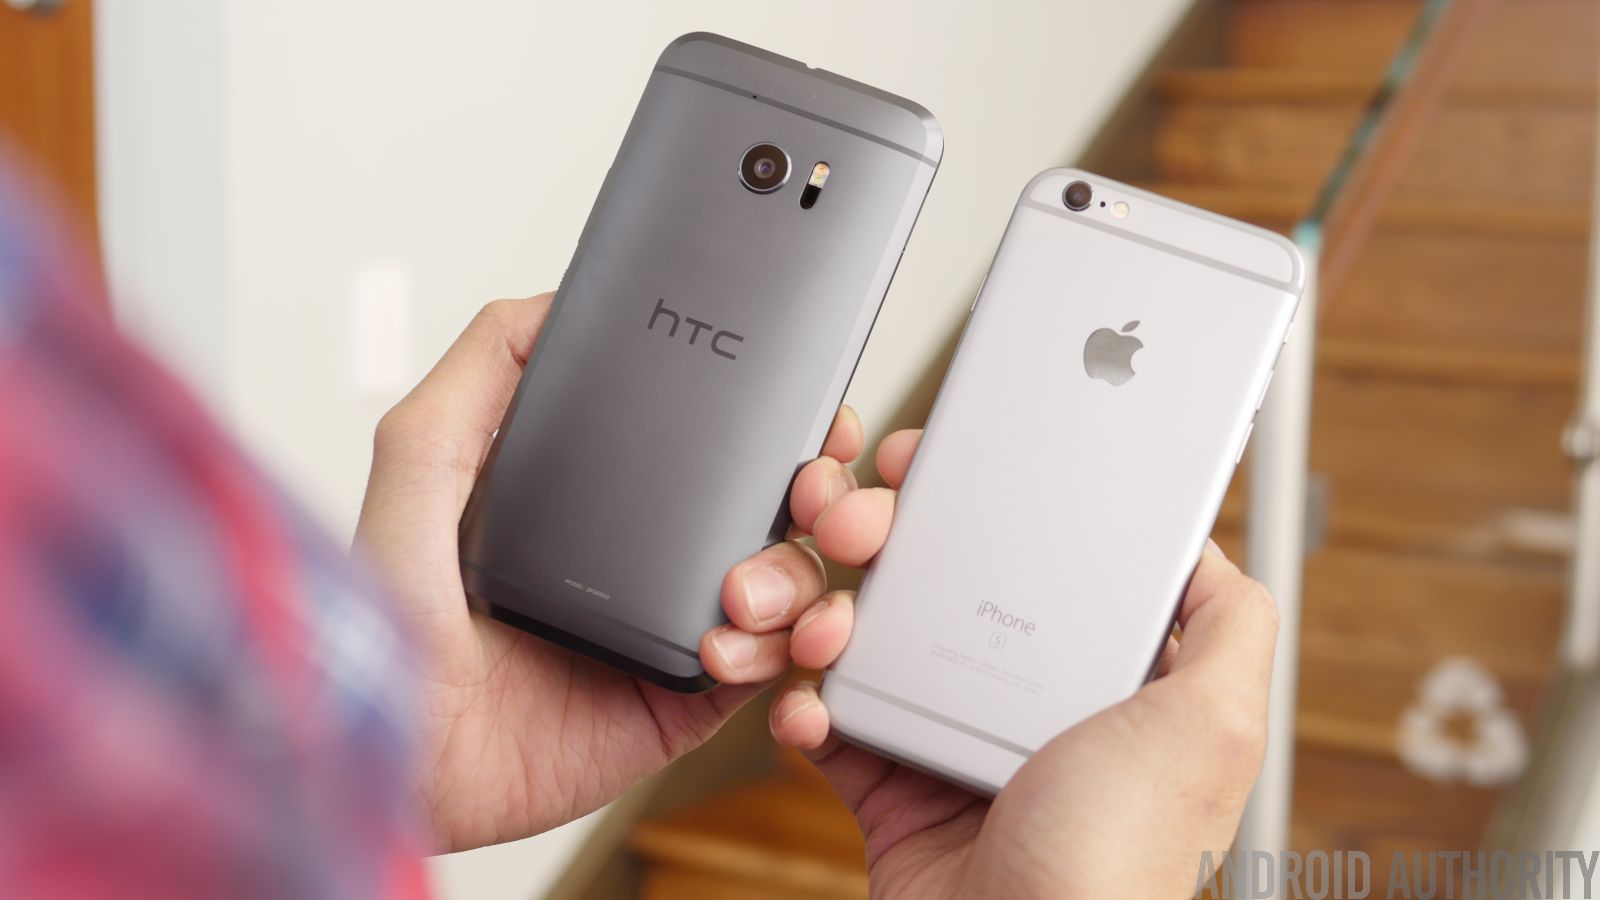 verontschuldigen Associëren vacht HTC 10 vs Apple iPhone 6s/Plus quick look - Android Authority